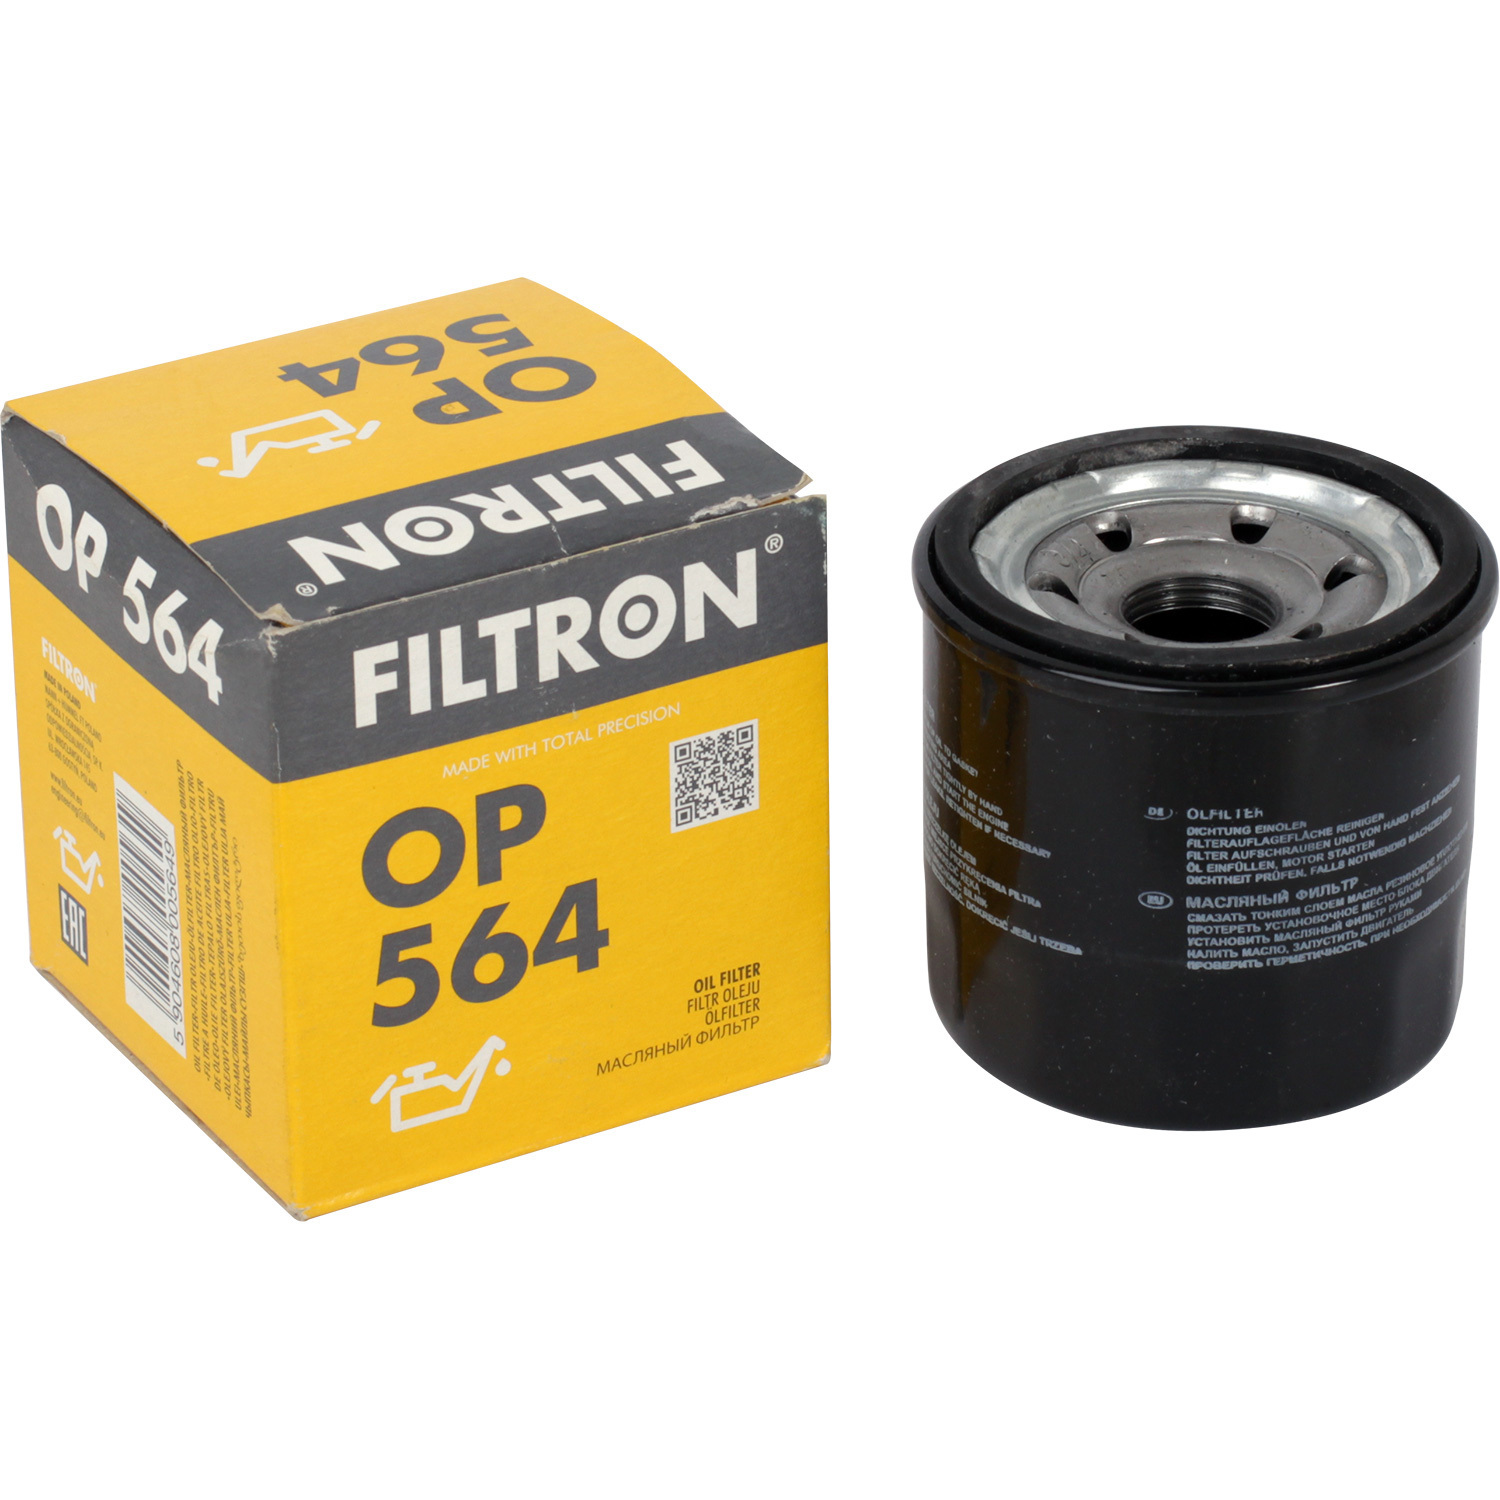 Фильтры Filtron Фильтр масляный Filtron OP564 фильтры filtron фильтр масляный filtron op564